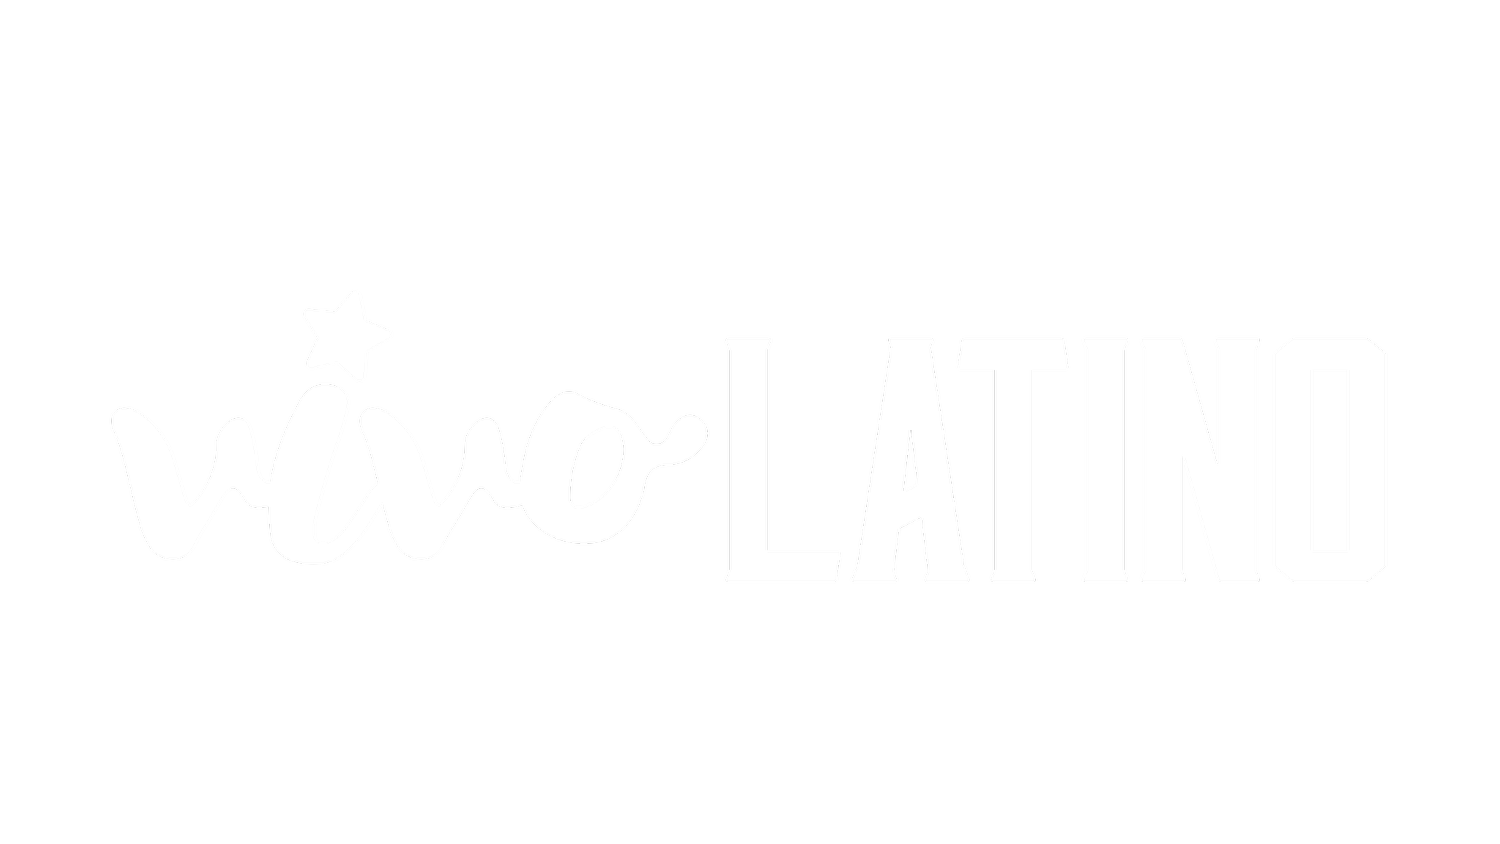 Vivo Latino 